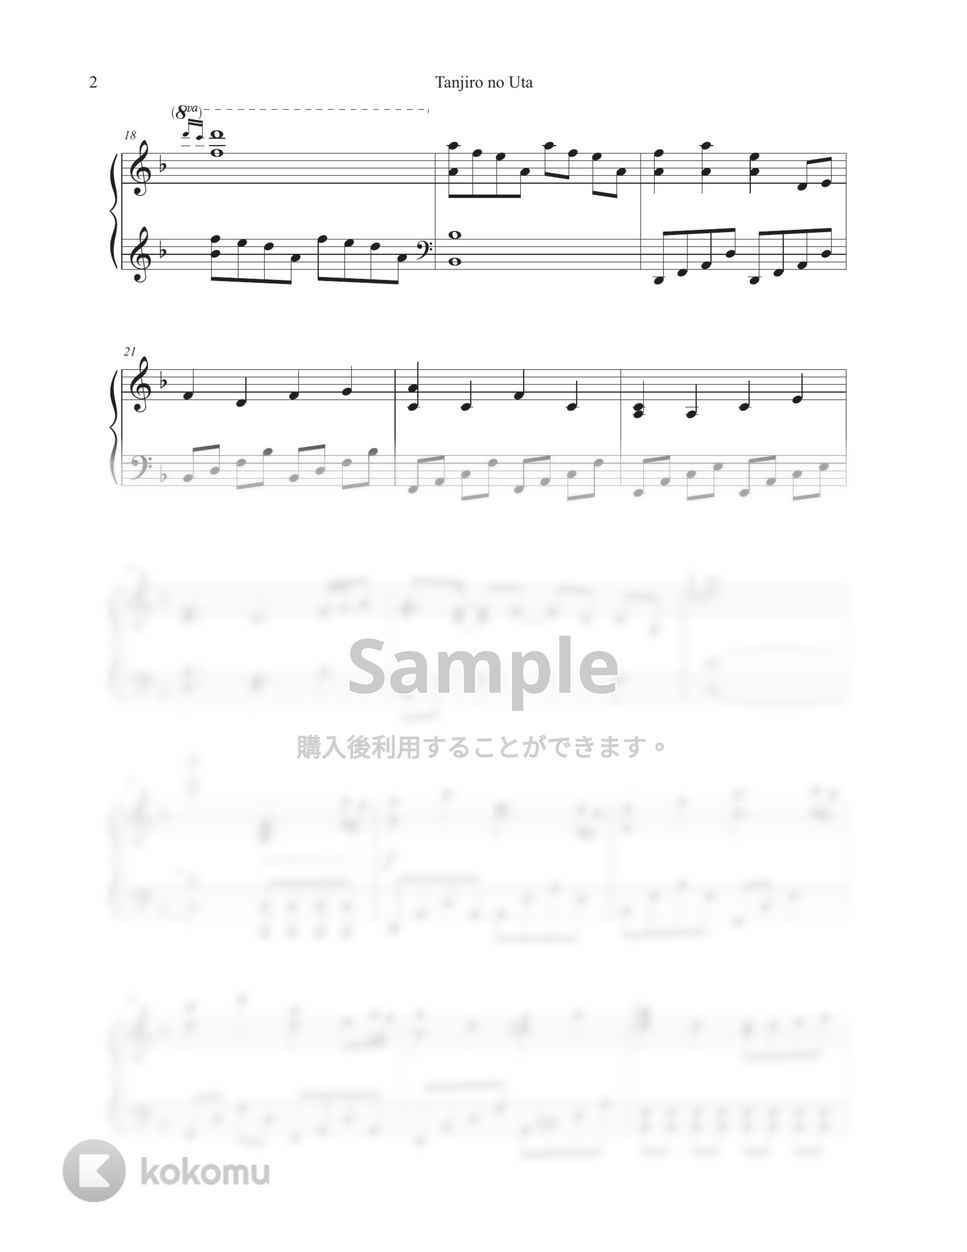 鬼滅の刃 - 竈門炭治郎のうた (中級楽譜) by Tully Piano